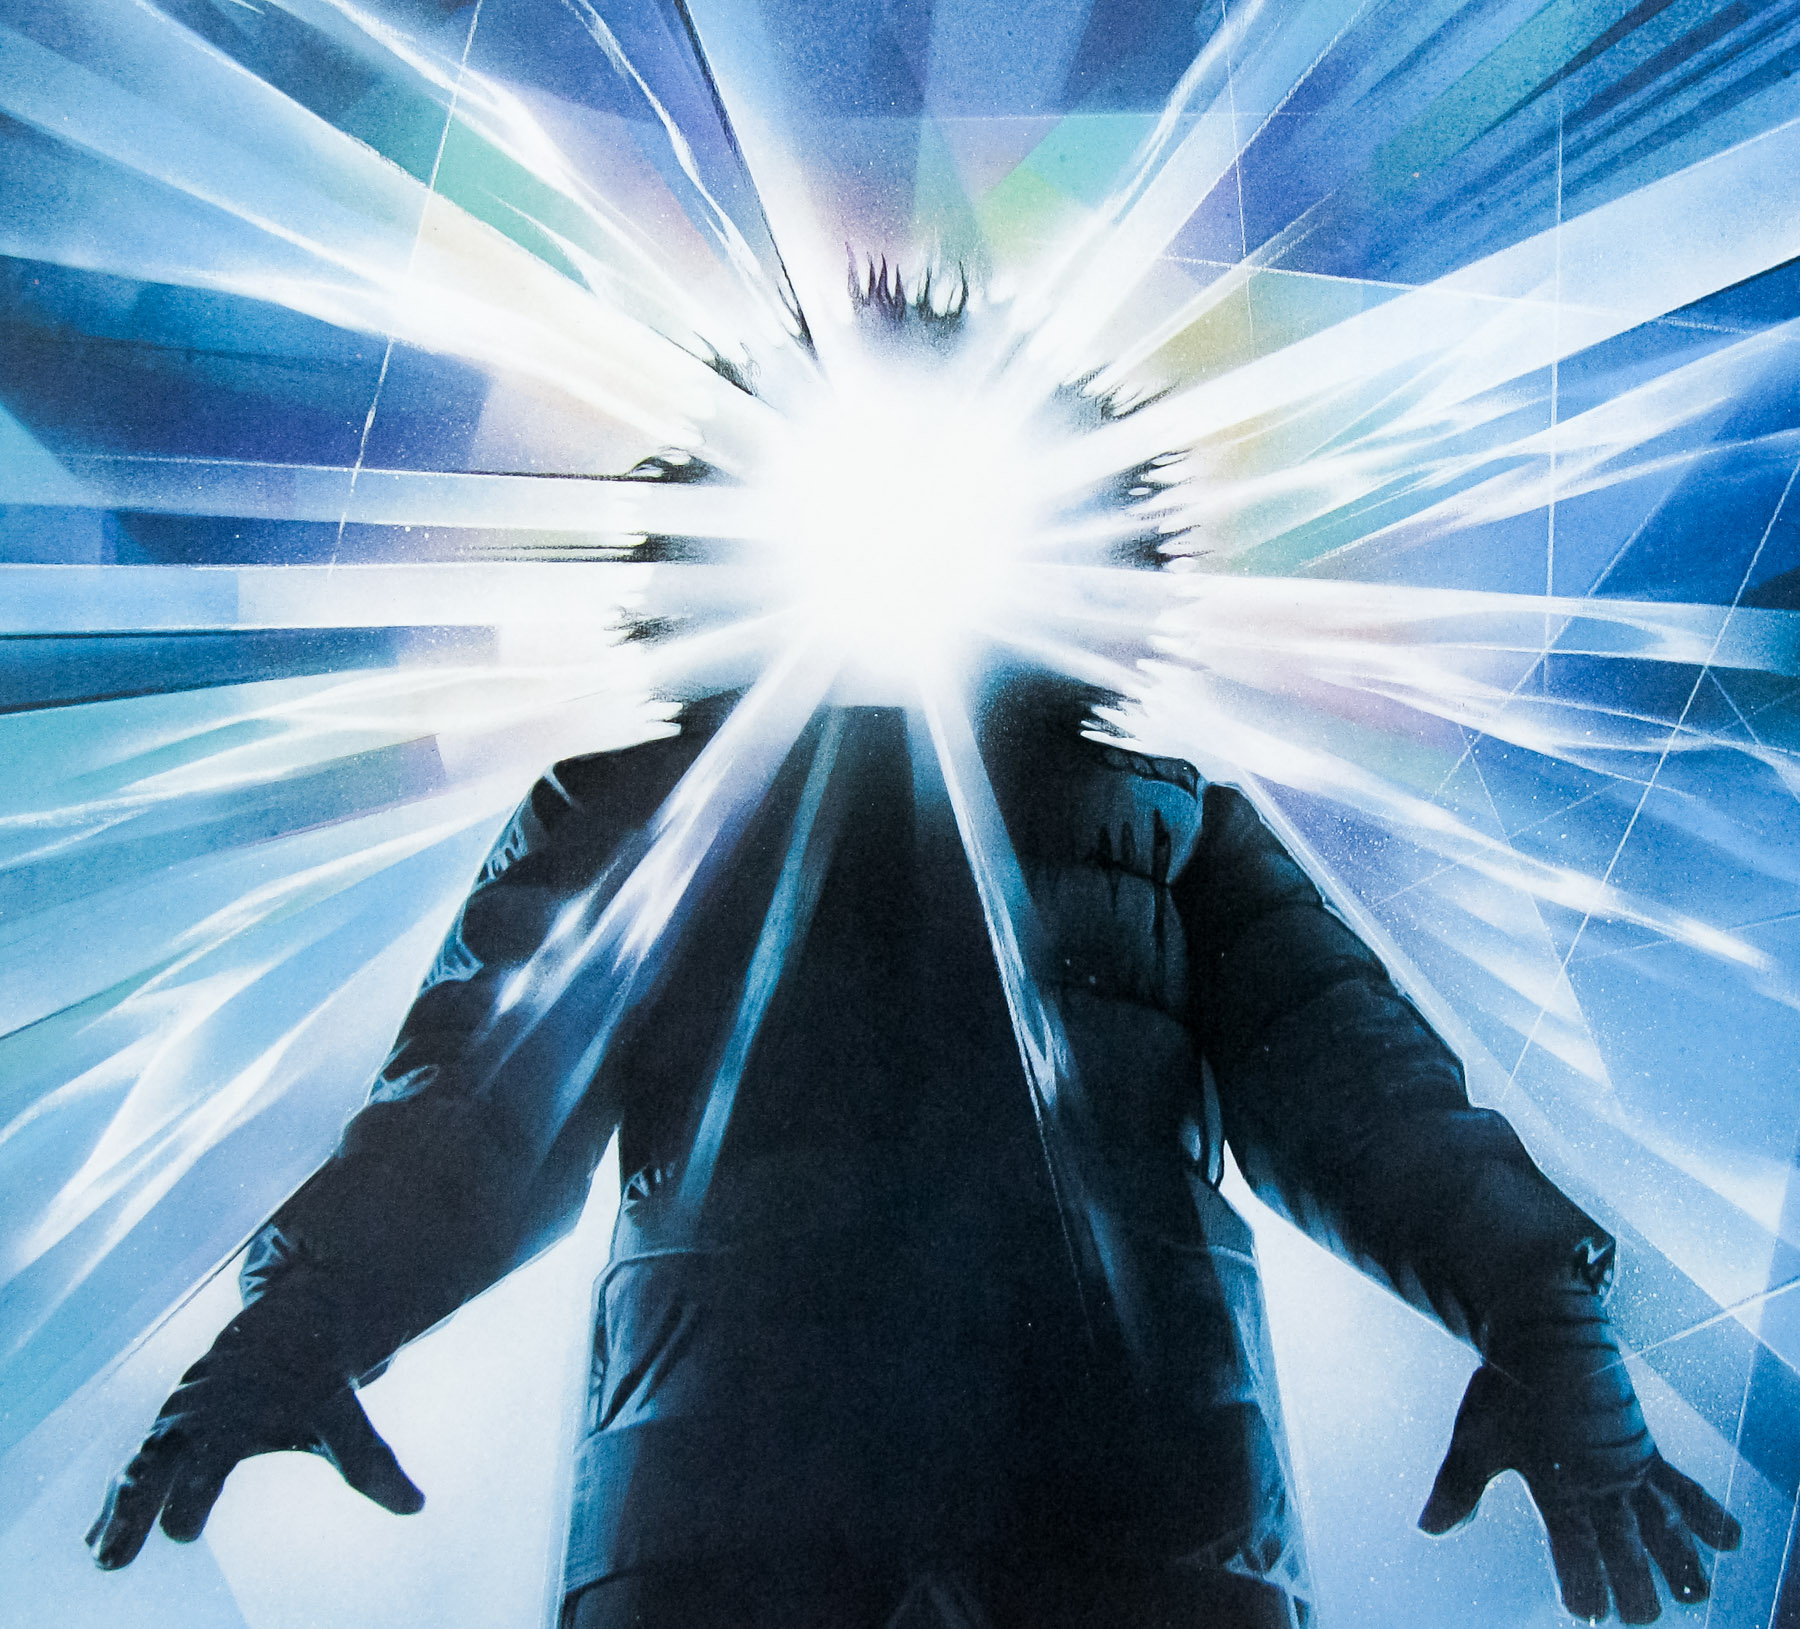 سینمای علمی تخیلی: بررسی فیلم The Thing ؛ حماقت چهارگانه در برابرِ بیگانه